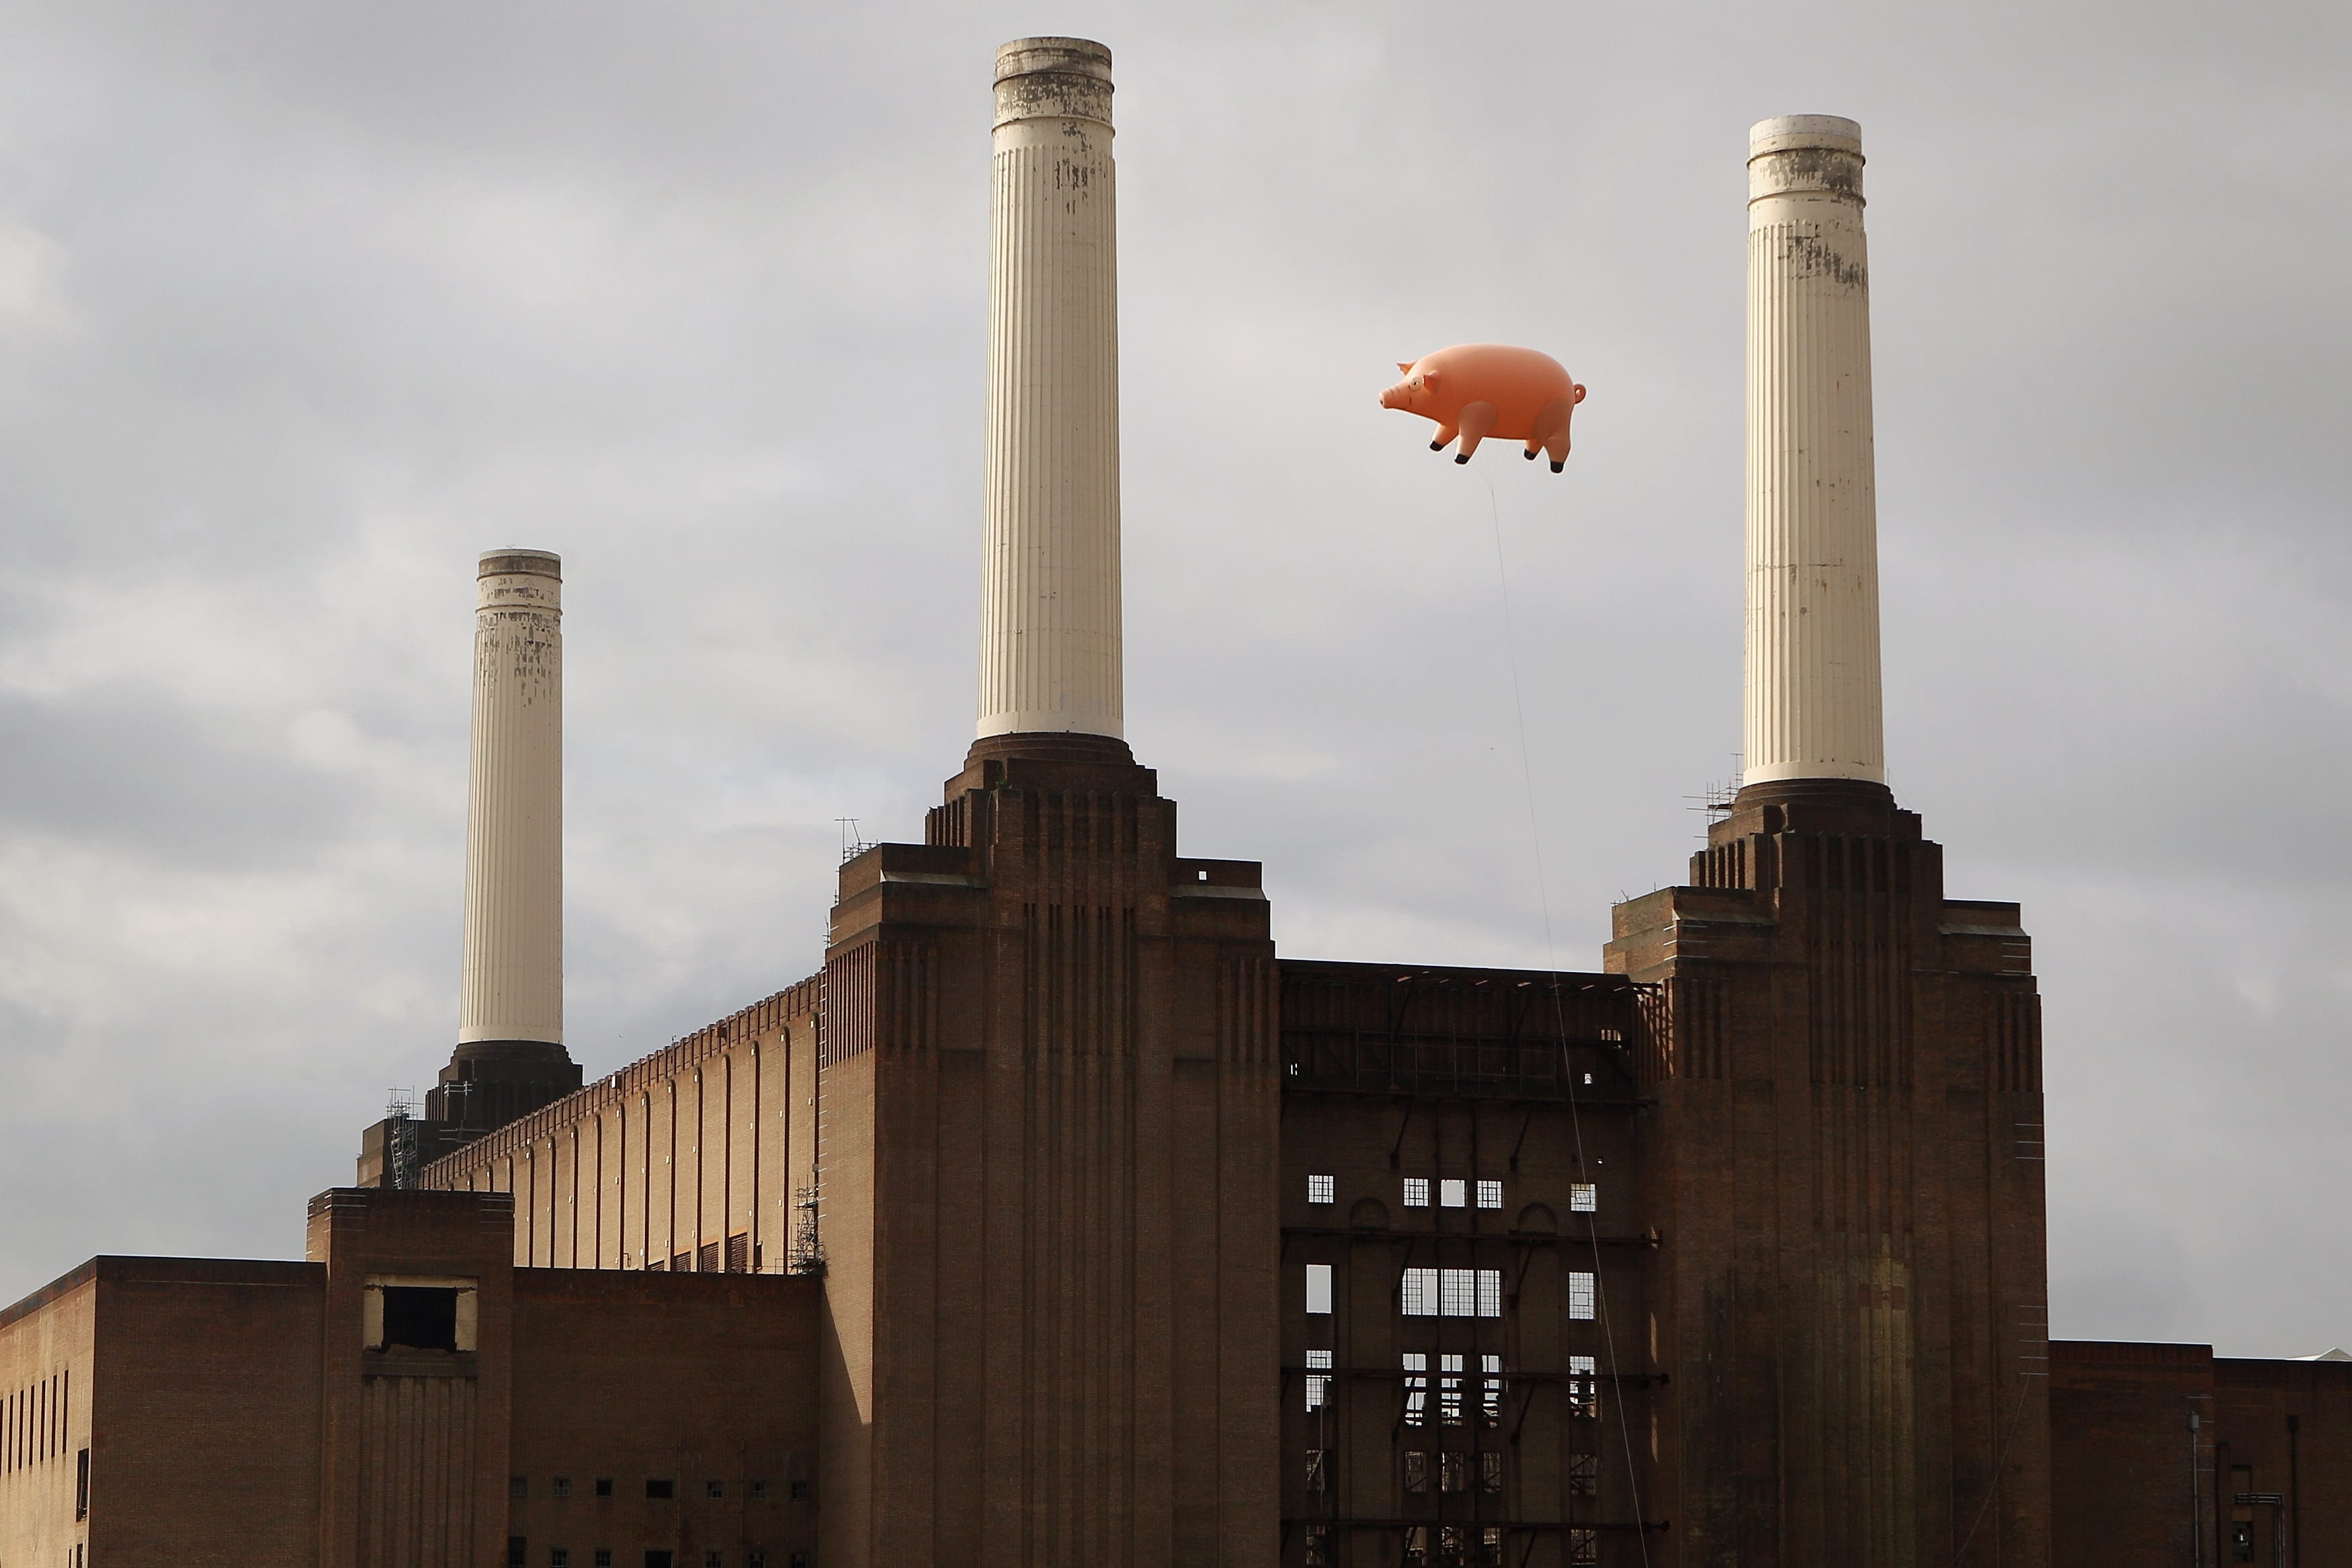 Un maiale gonfiabile vola sopra la centrale elettrica di Battersea a Londra nella riproposizione moderna dell'iconica copertina dell'album dei Pink Floyd "Animals" (1977)